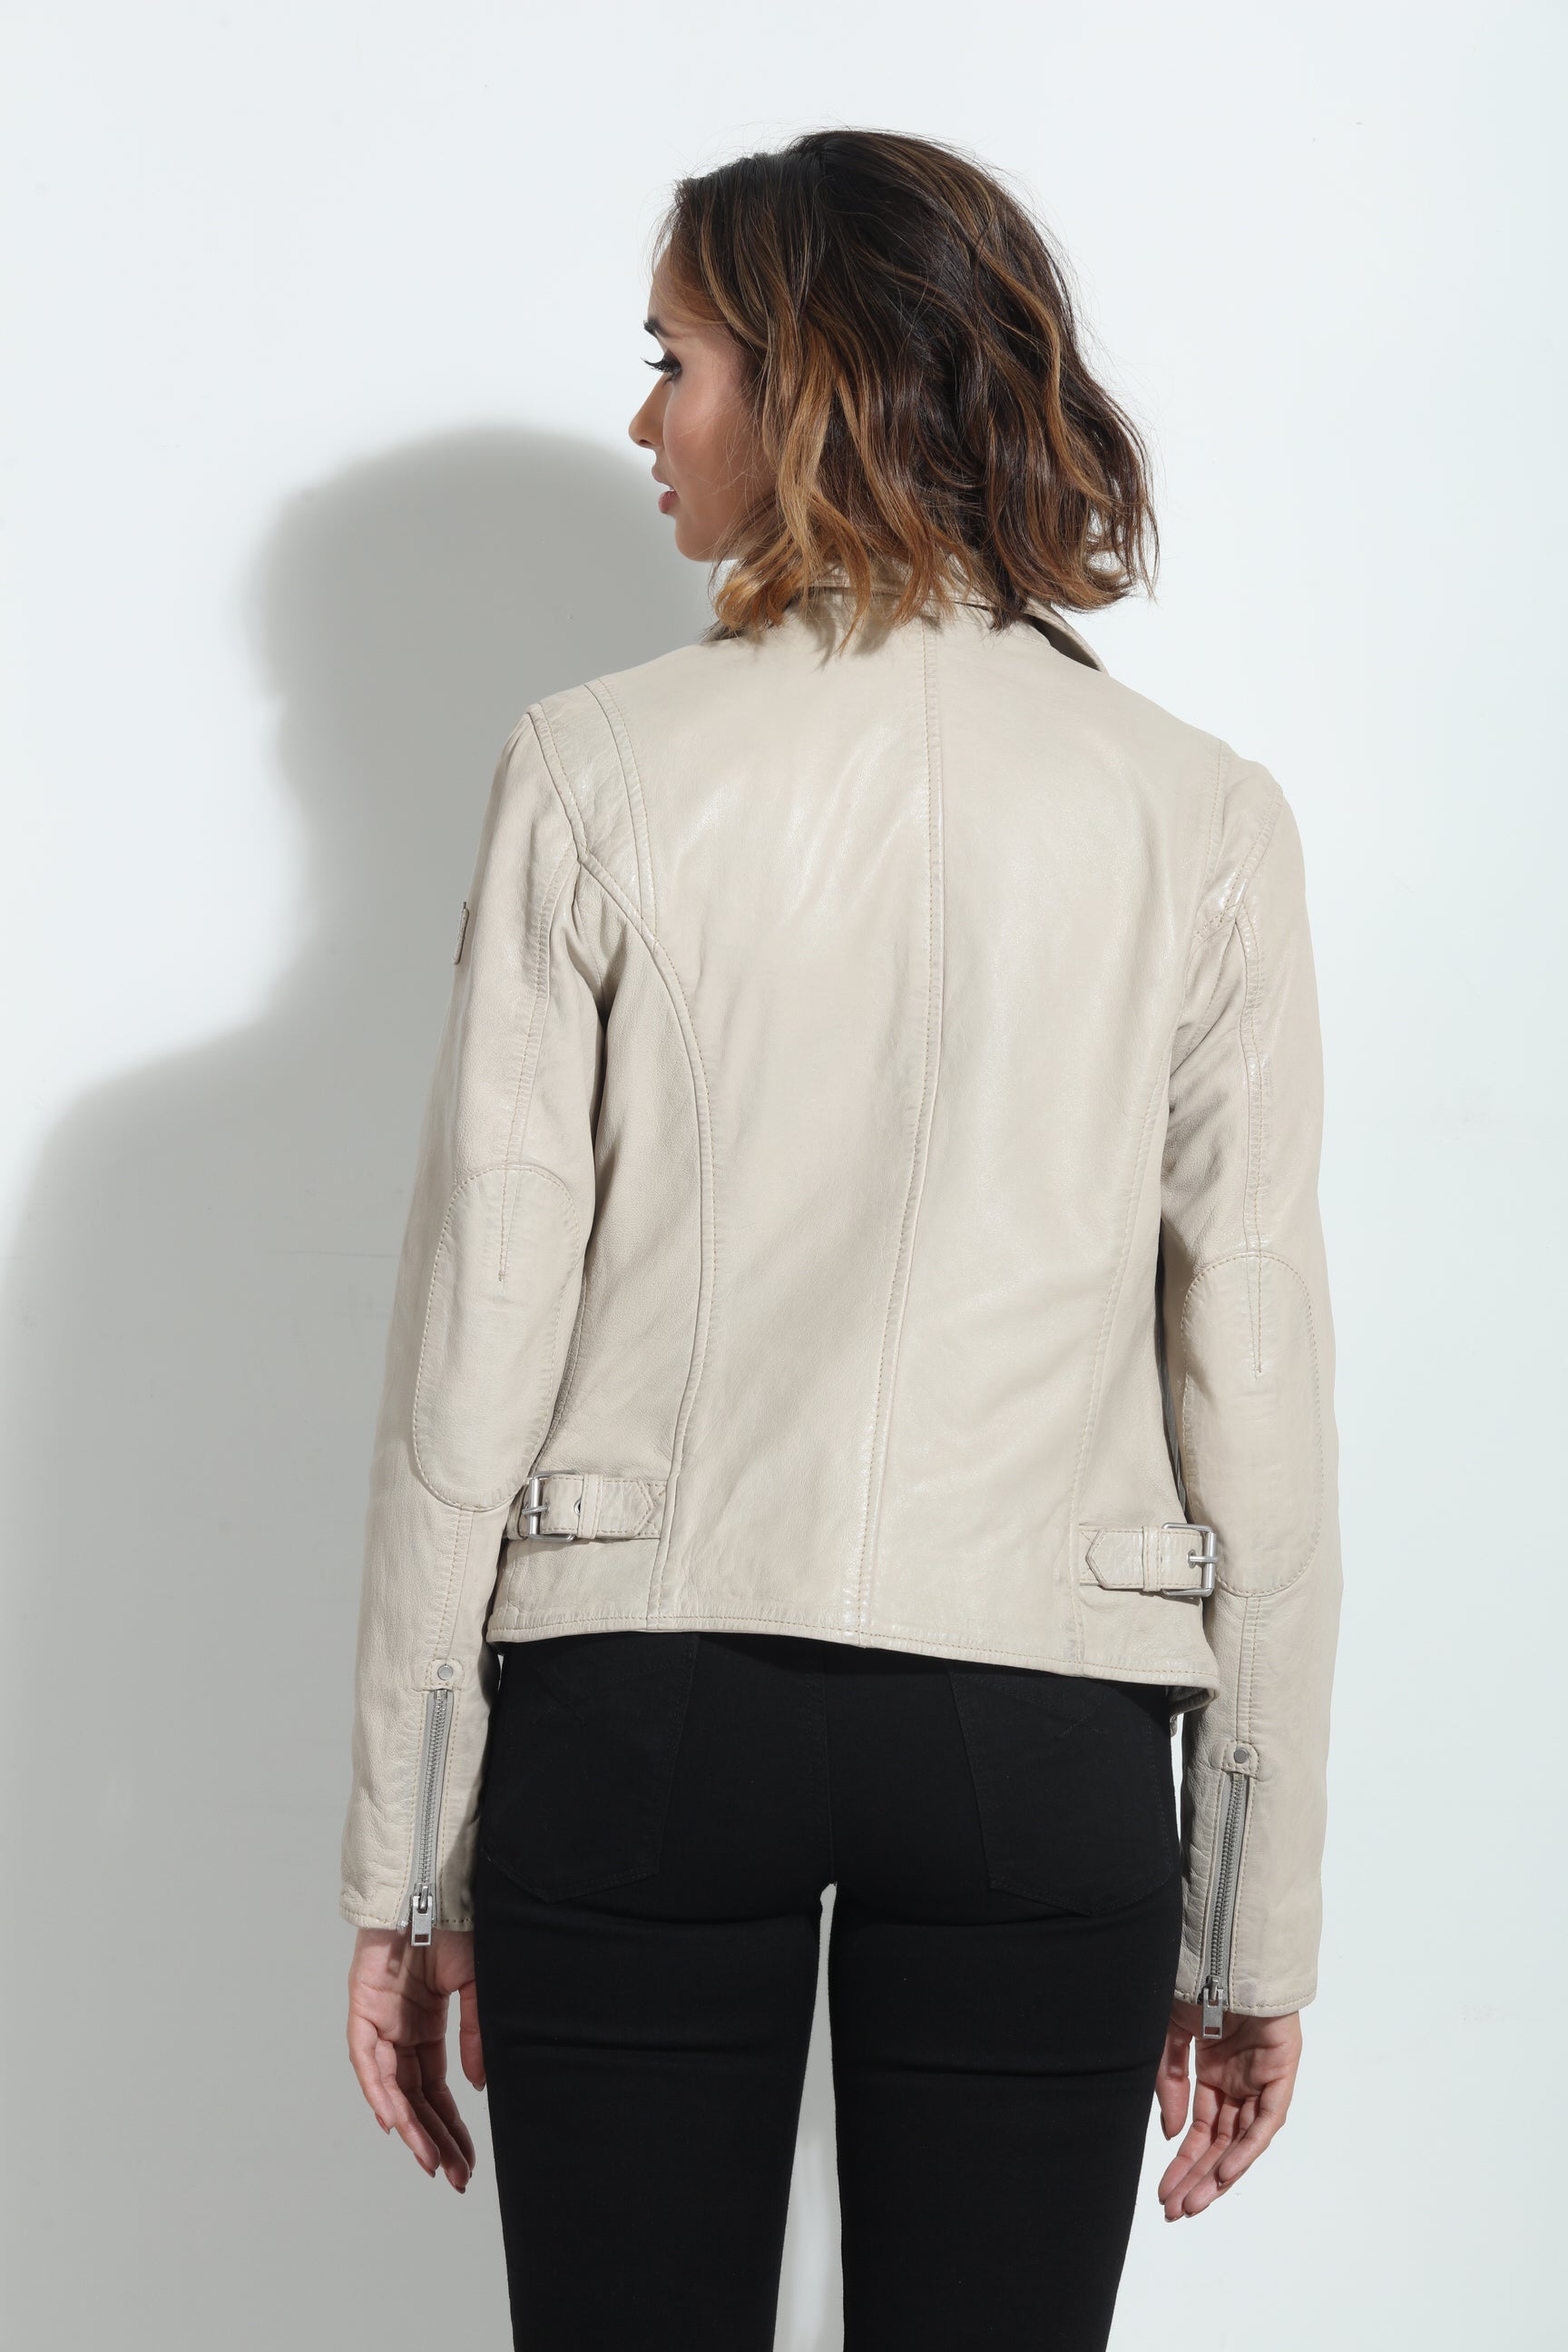 Mauritius Sofistar White Leather Jacket w/ Stars – MODA Nashville